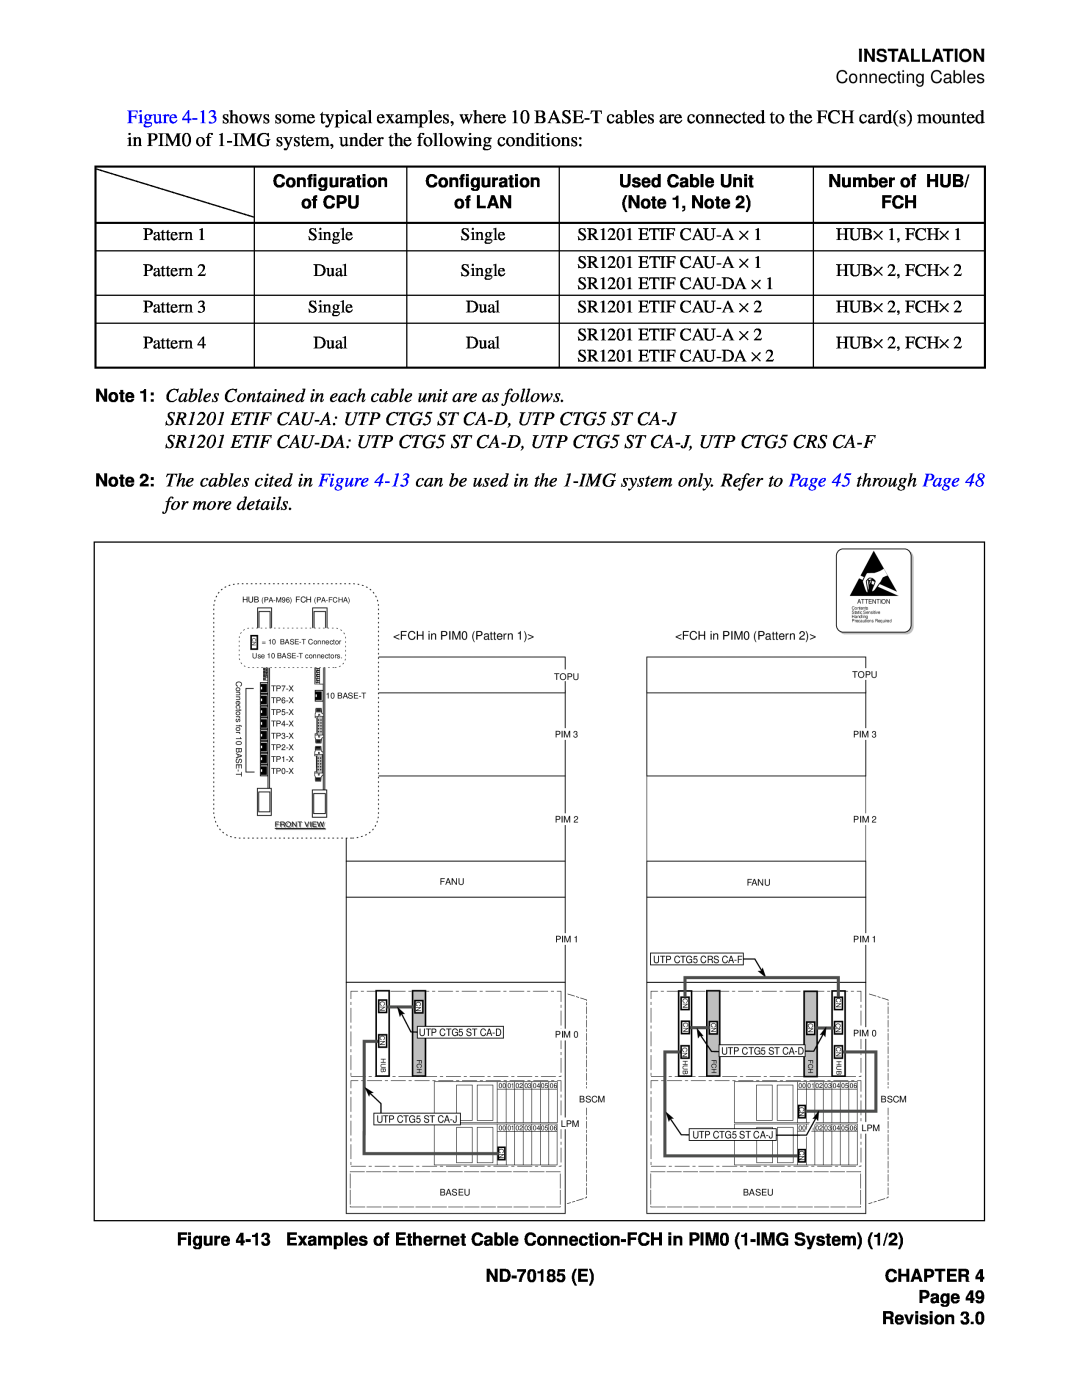 NEC NEAX2400 system manual Installation 